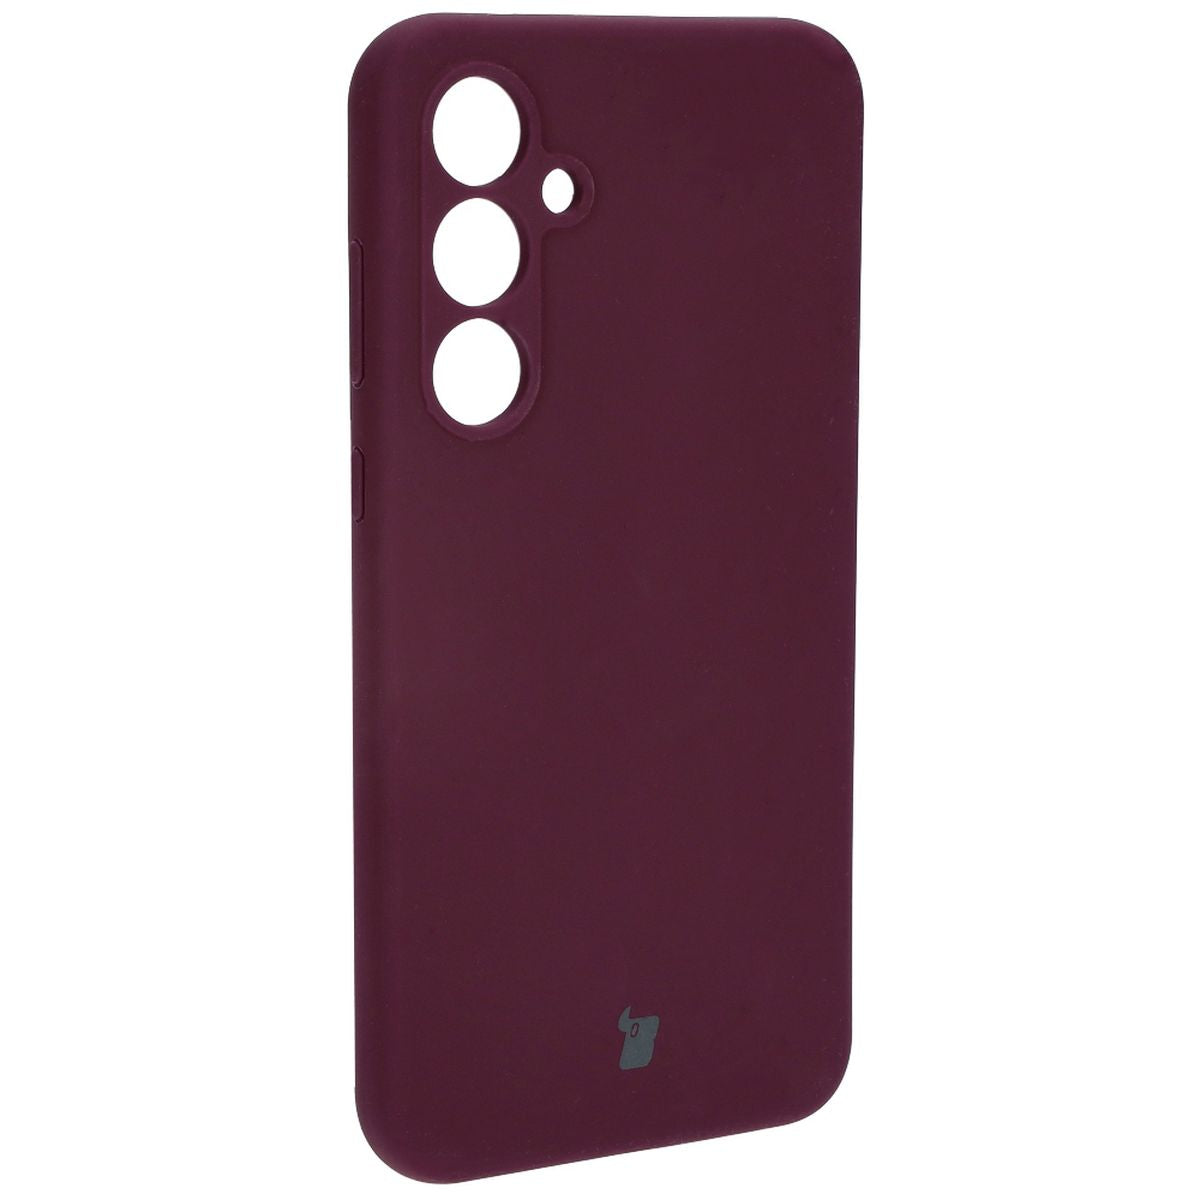 Silikon Schutzhülle für Galaxy A55 5G, Bizon Soft Case, Pflaumenfarbe